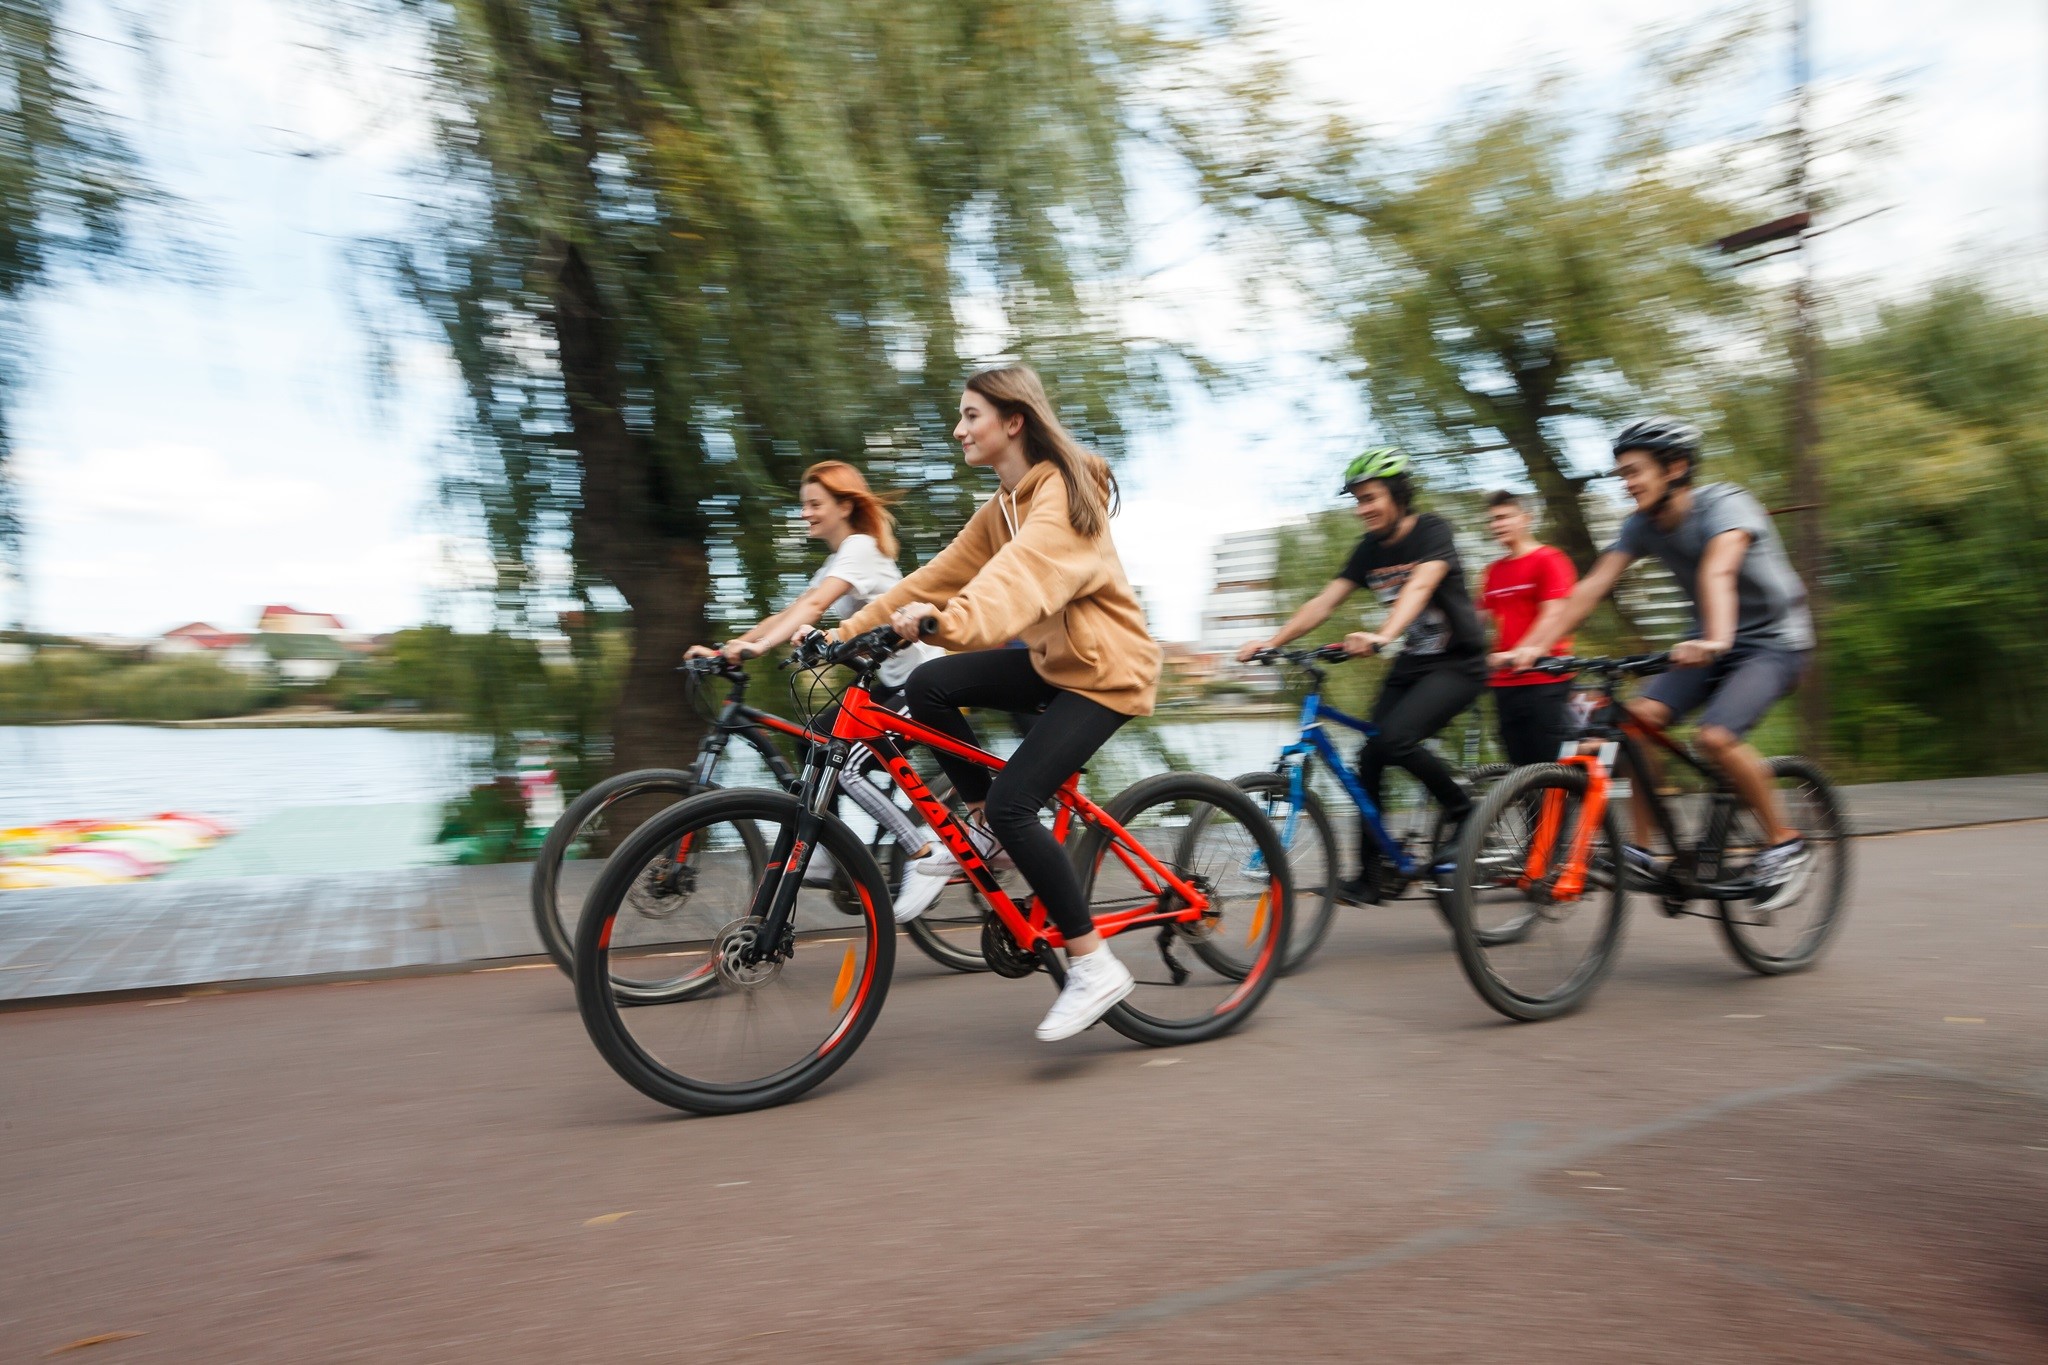 Curs gratuit pentru copii privind mersul corect cu bicicleta. FOTO: Municipiul Cluj-Napoca - Facebook